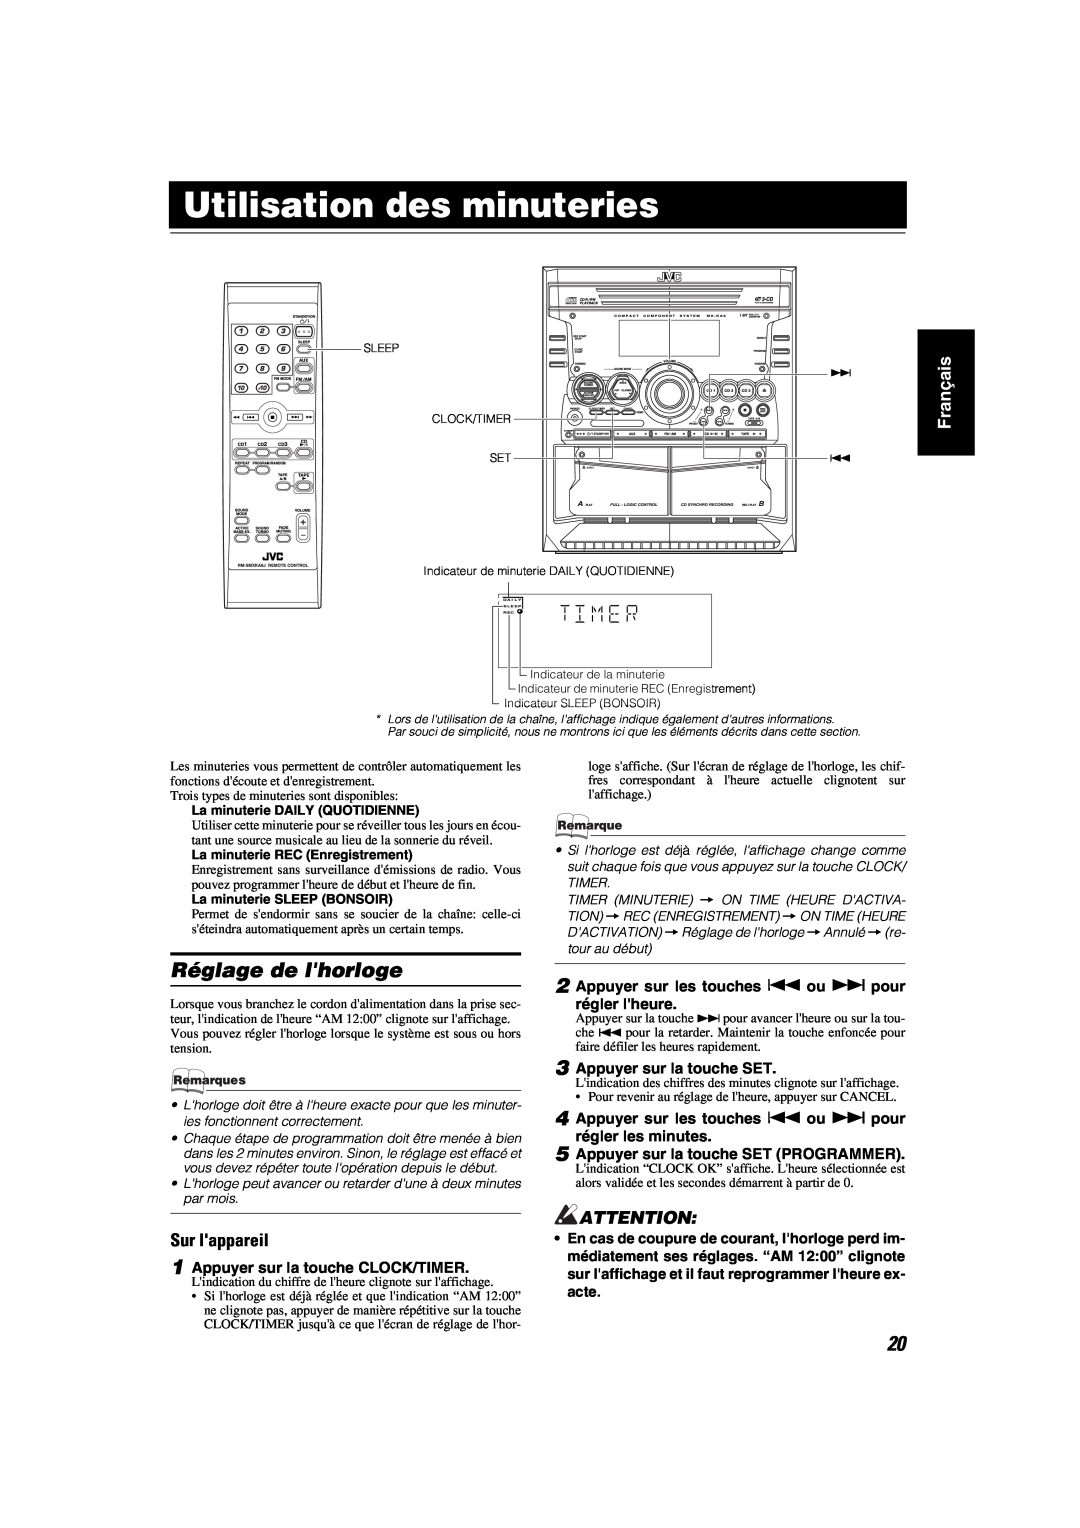 JVC MX-KA6 manual Utilisation des minuteries, Réglage de lhorloge, Français, Sur lappareil, La minuterie DAILY QUOTIDIENNE 